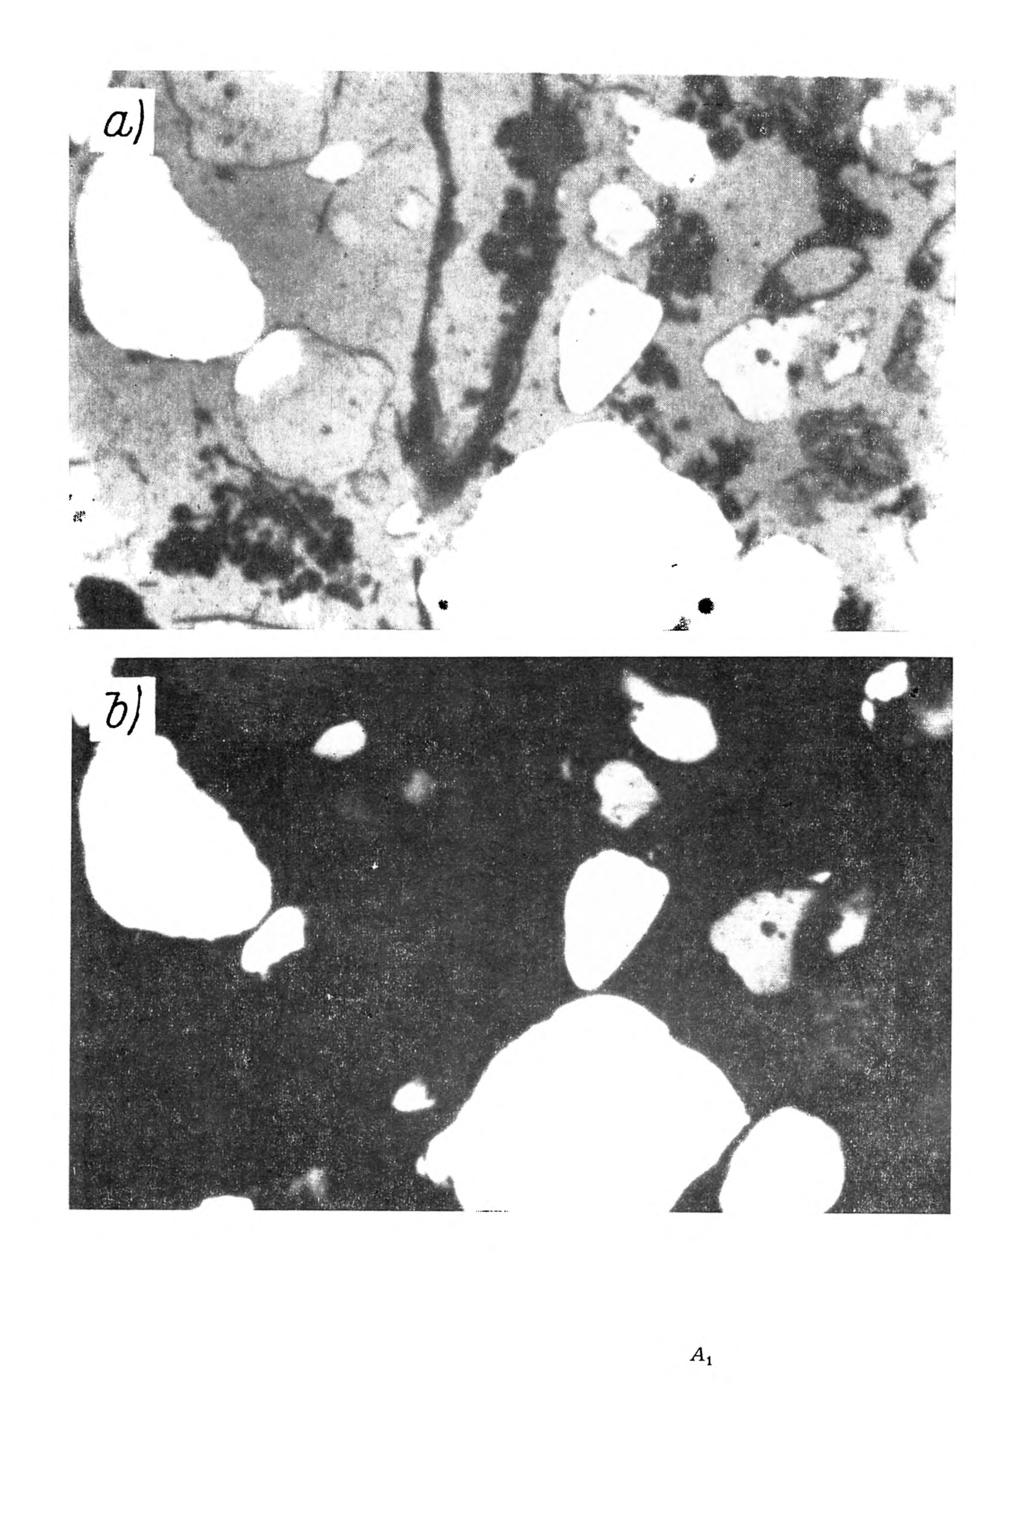 Rys. 2. M ikrom orfologia gleby bielicow ej w ytworzonej z piasku luźnego. Poziom A u głębokość próbki 5-18 cm.